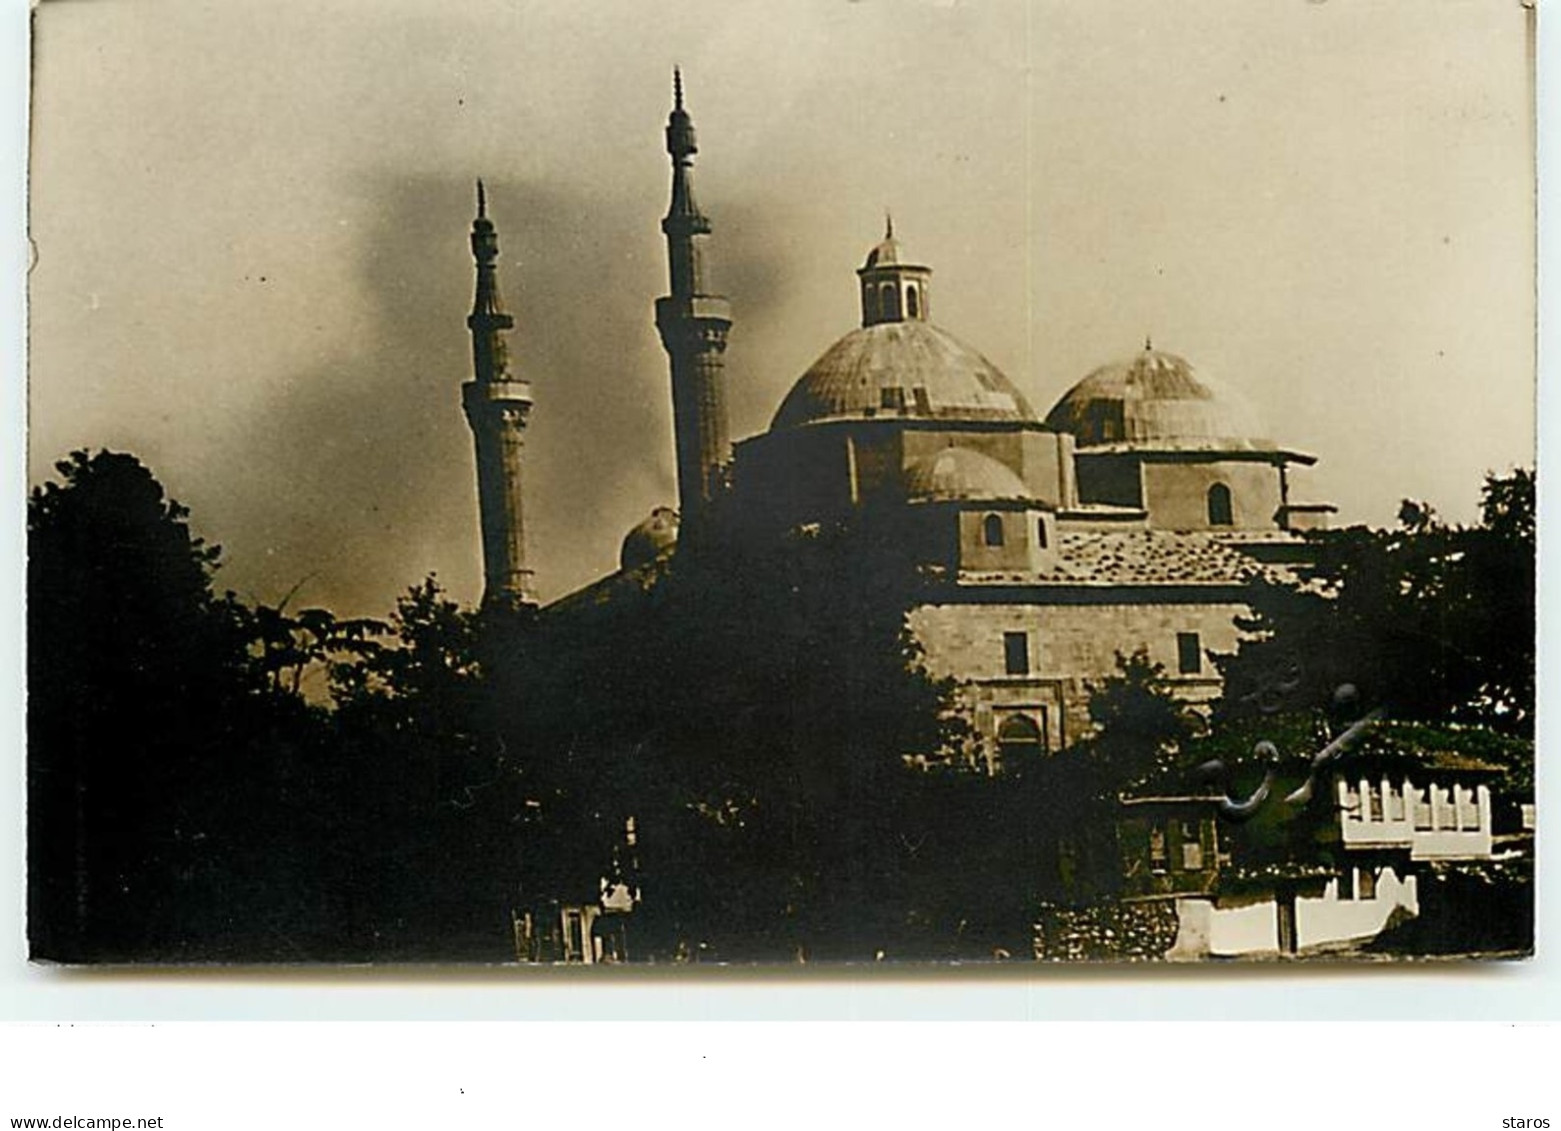 BROUSSE - BURSA - Carte Photo N°8 - Vue Générale D'une Mosquée - Turquie